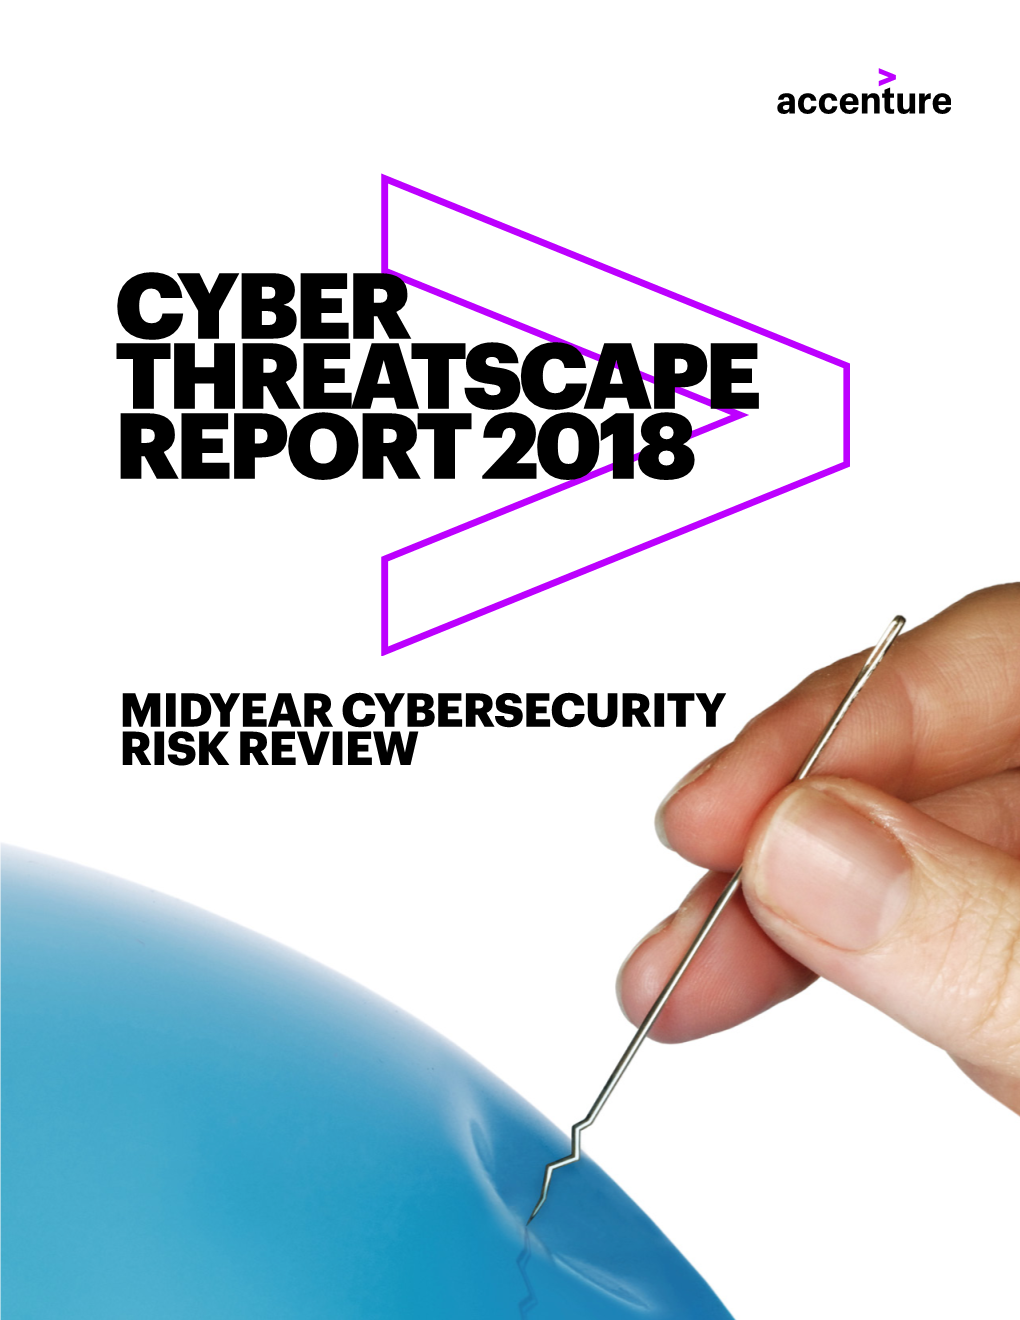 Cyber Threatscape Report 2018